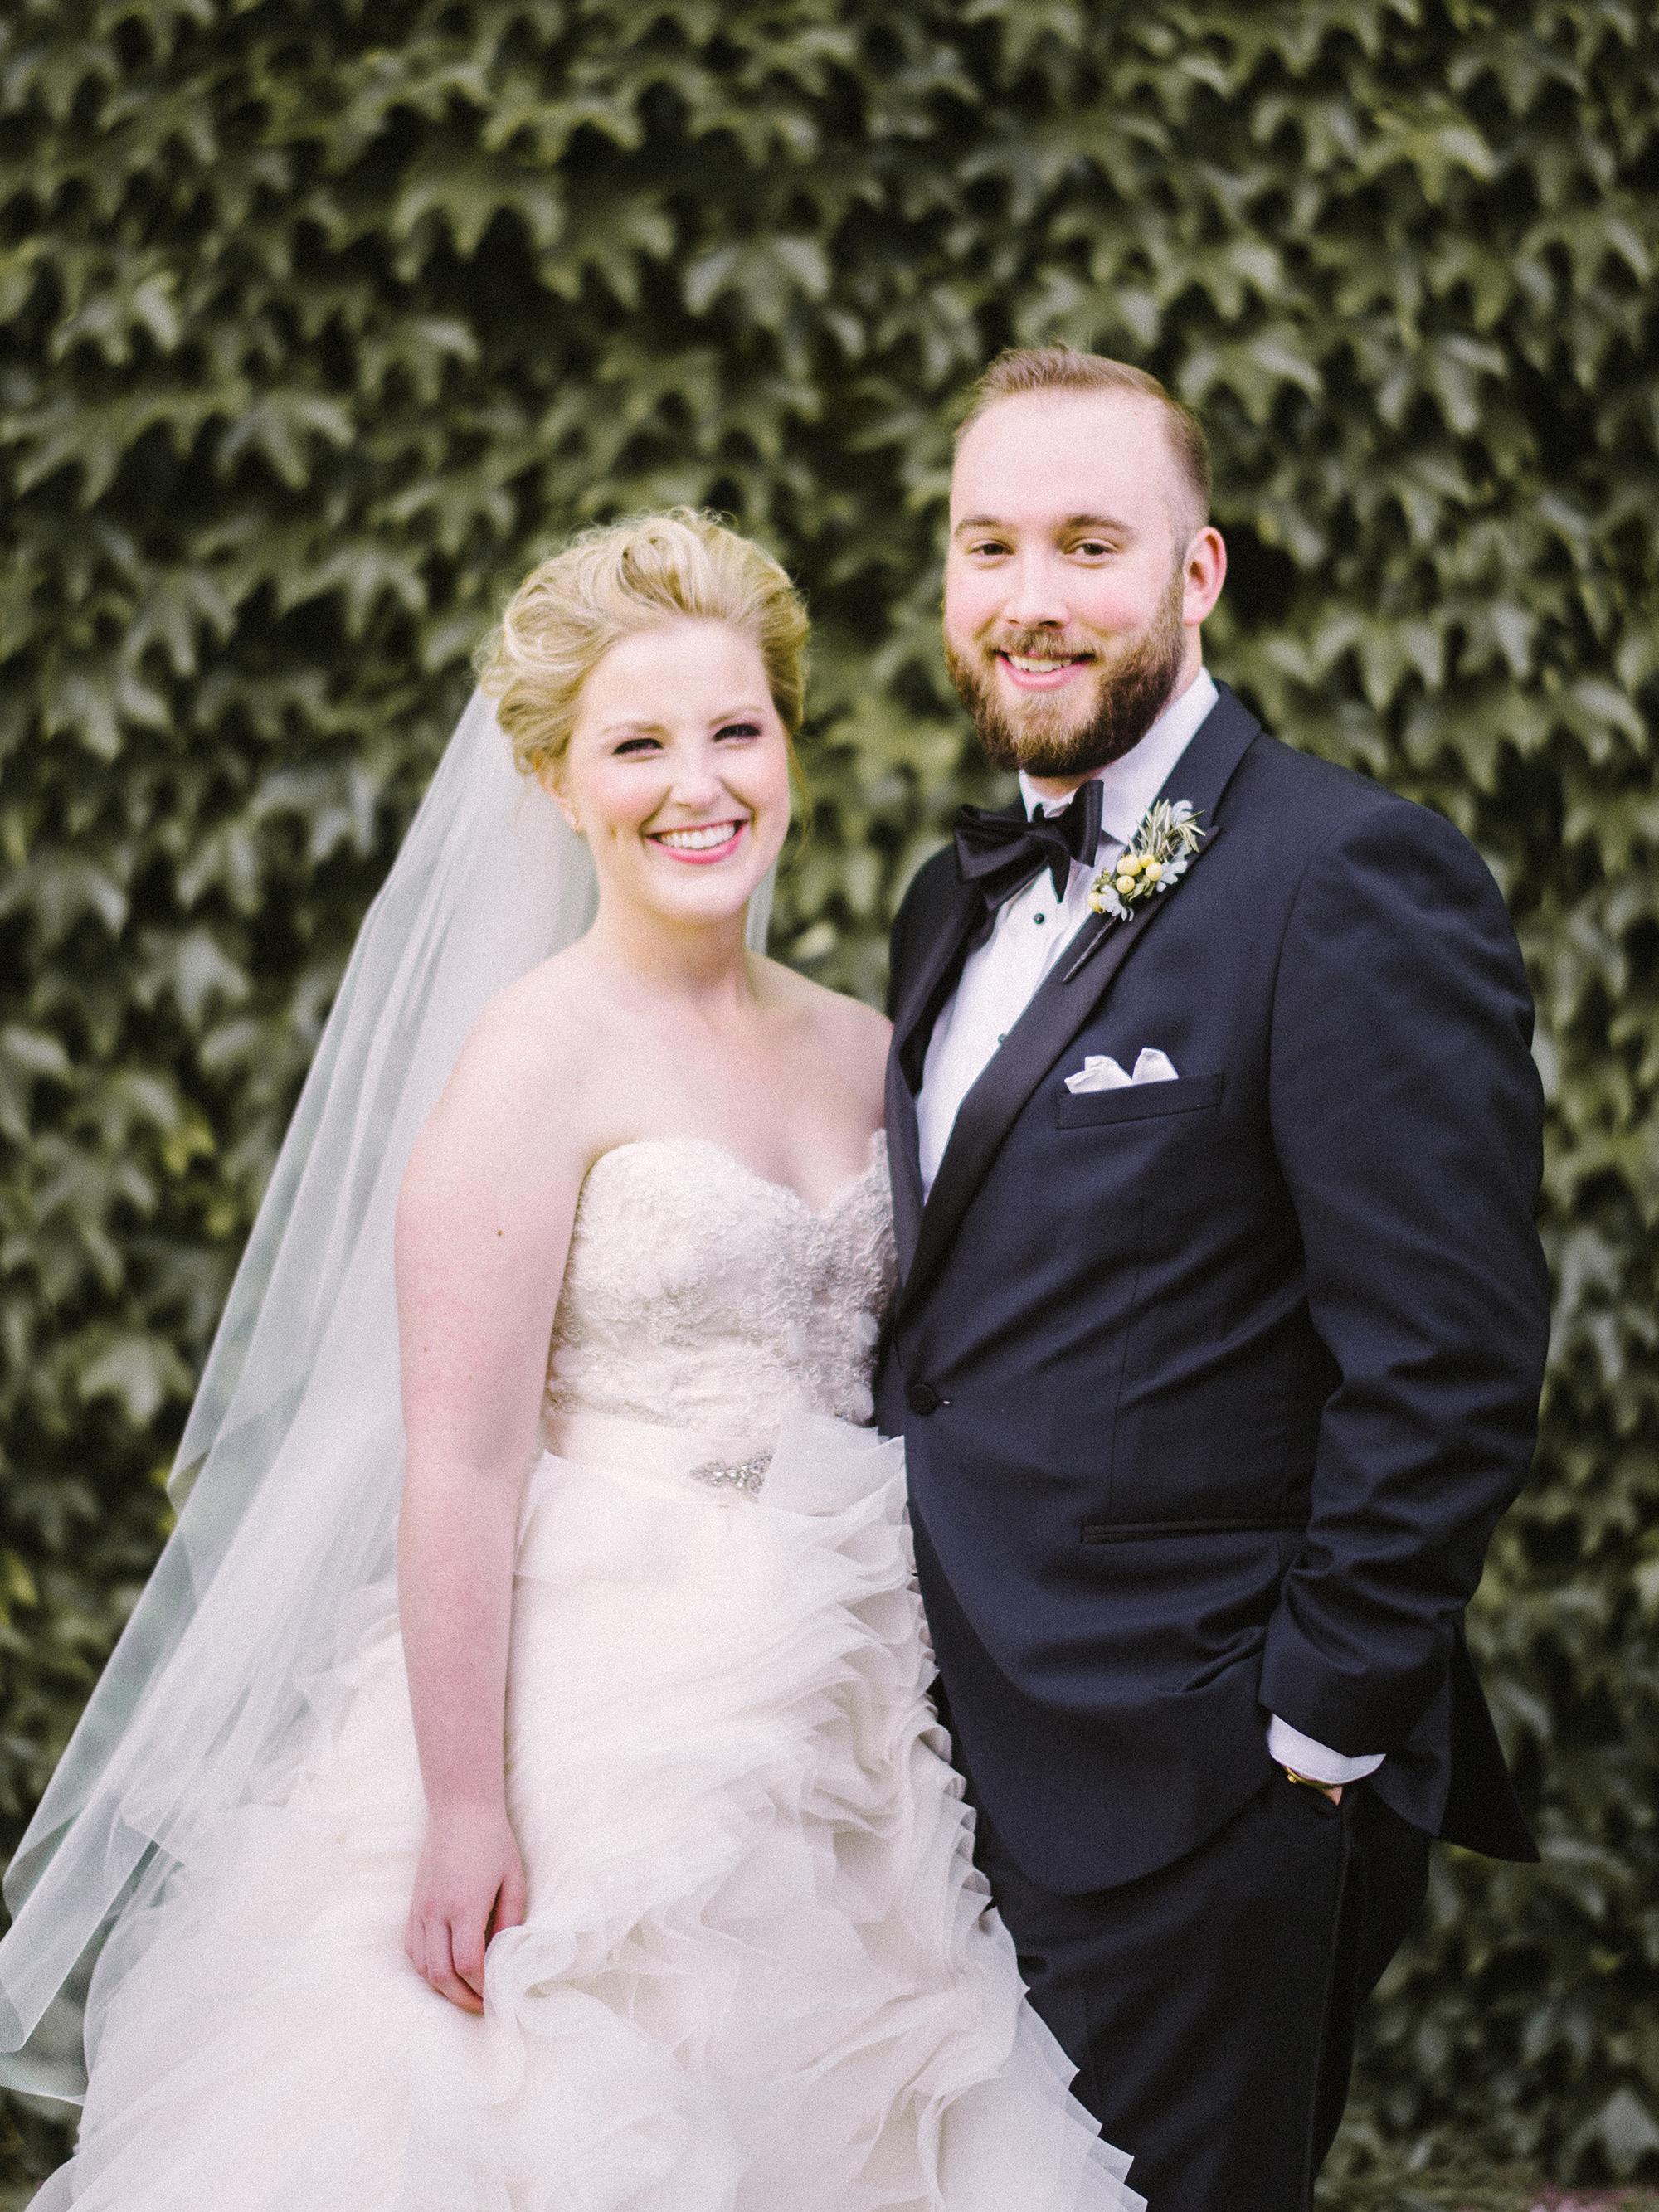 Will Becker & Andrea Franz Kansas City Wedding Photographer